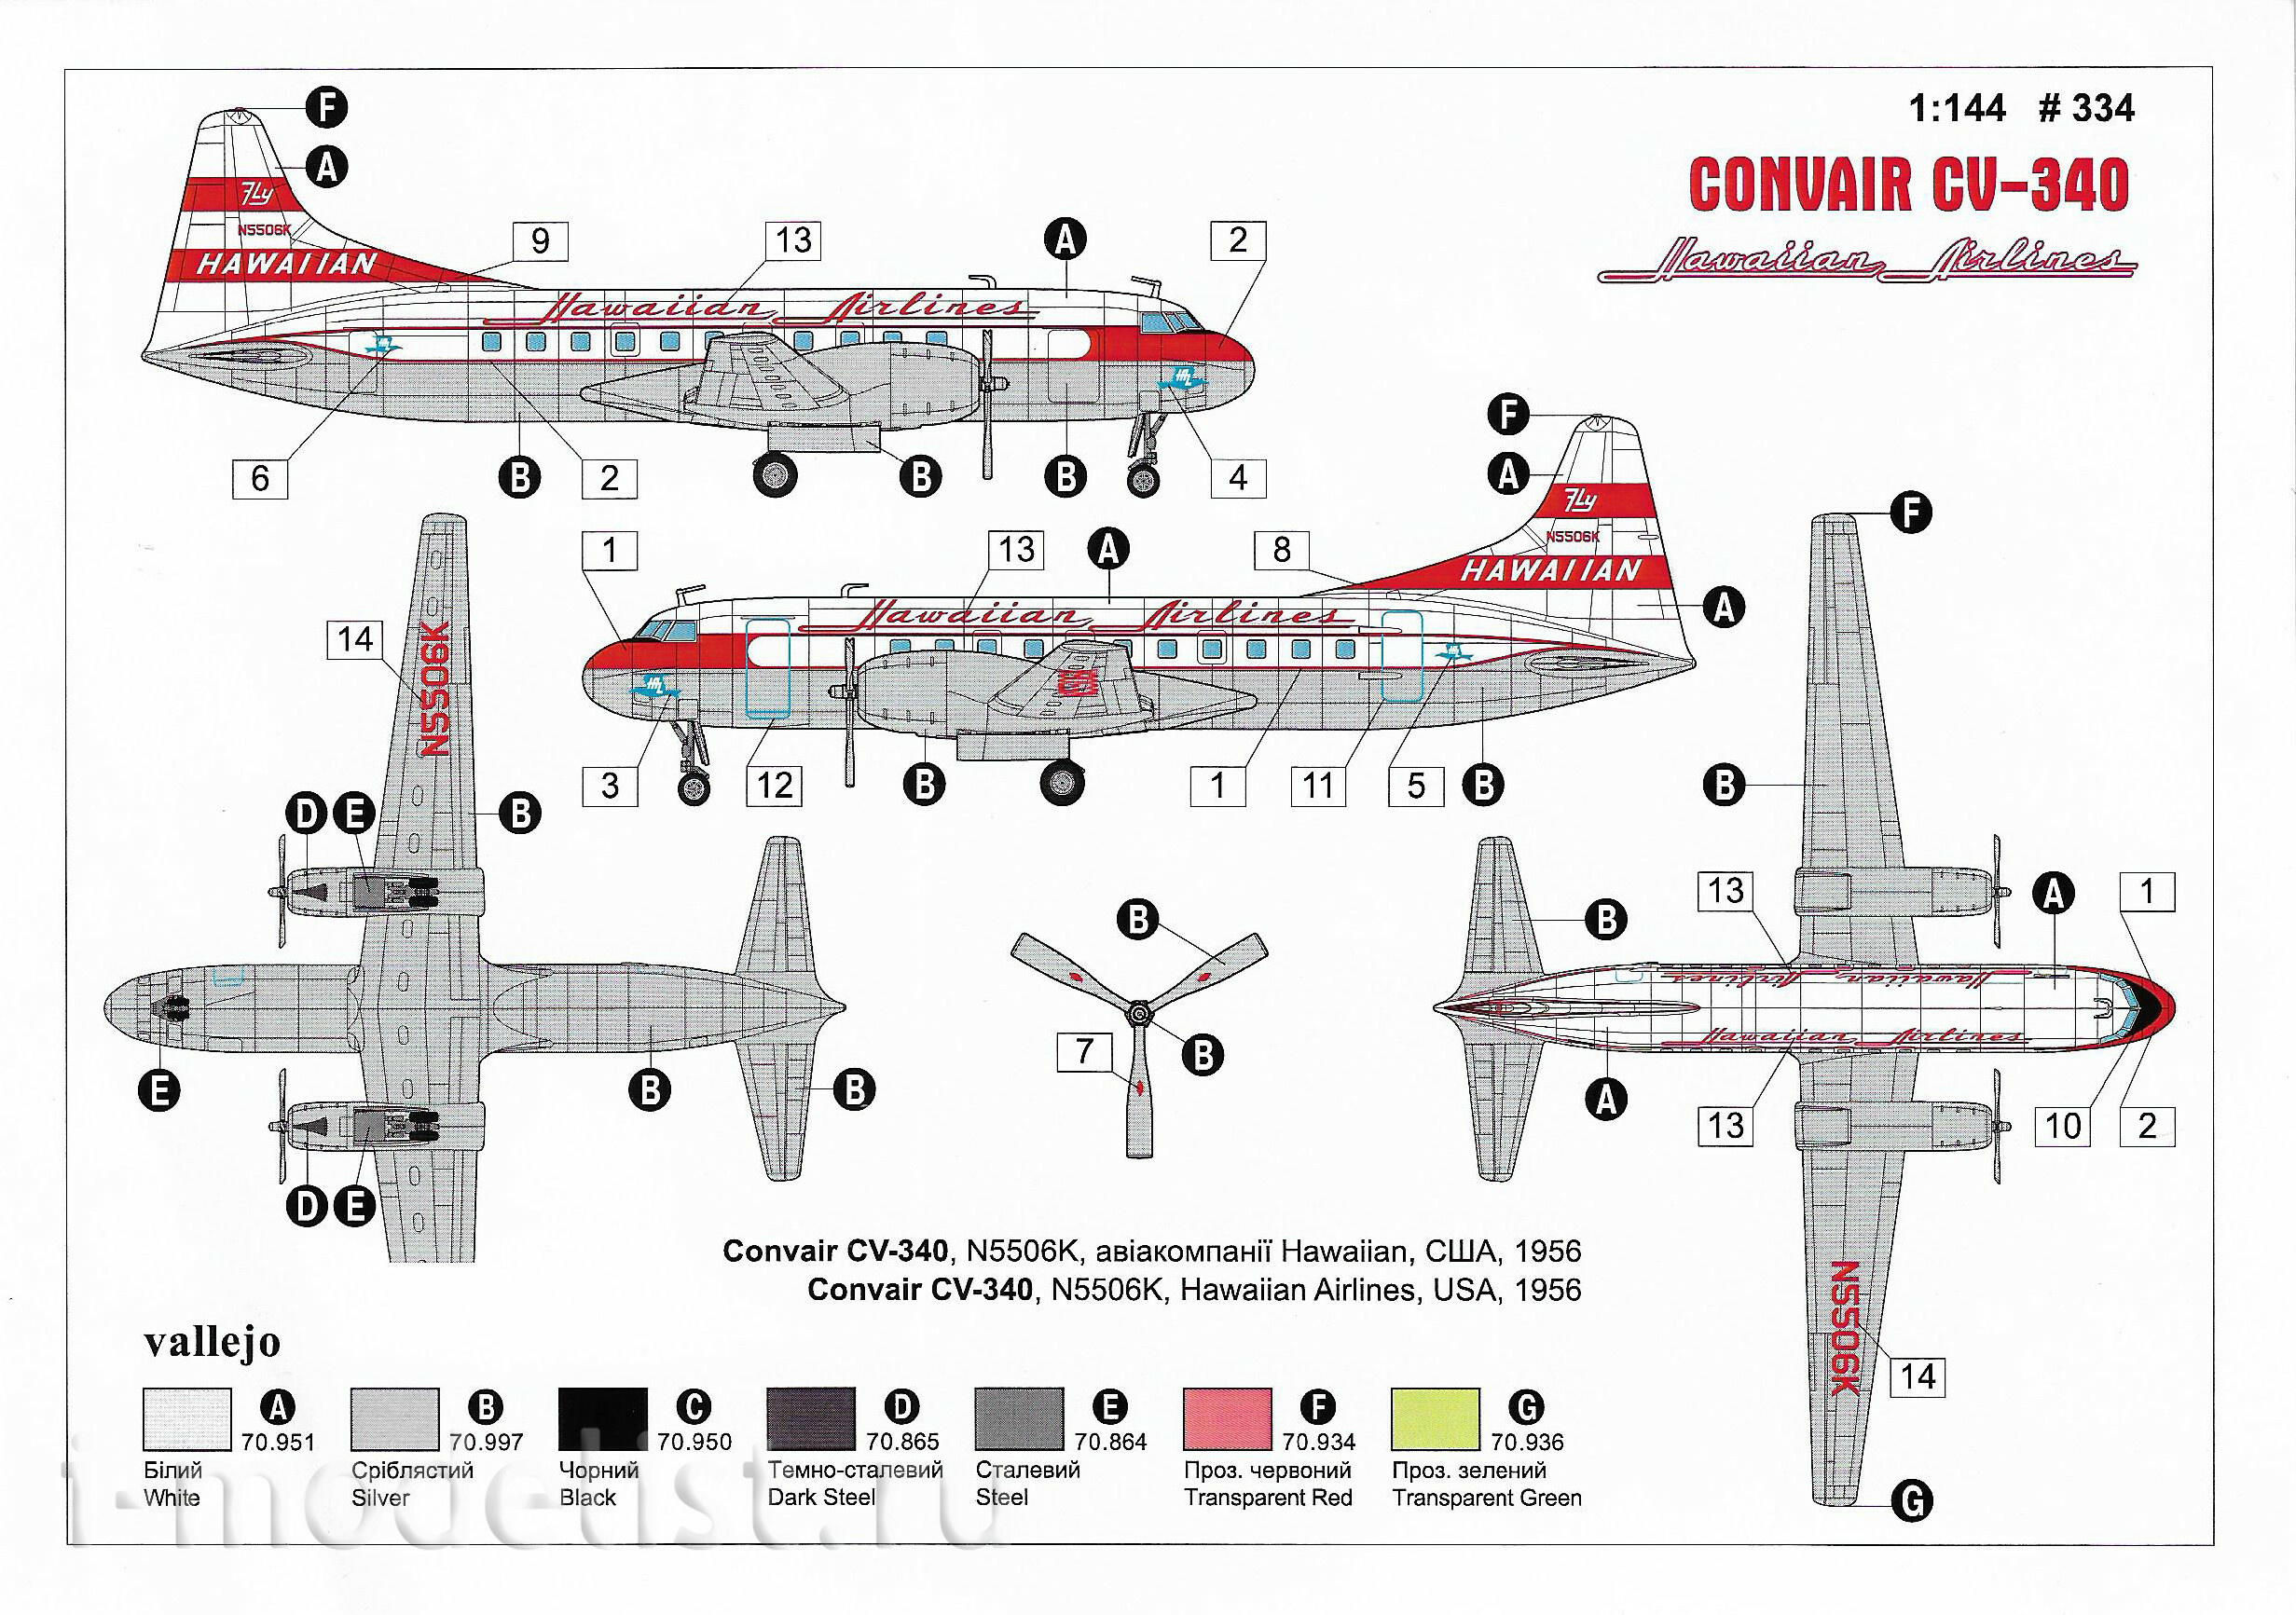 334 Roden 1/144 Самолёт Convair CV-340 Hawaiian Airlines